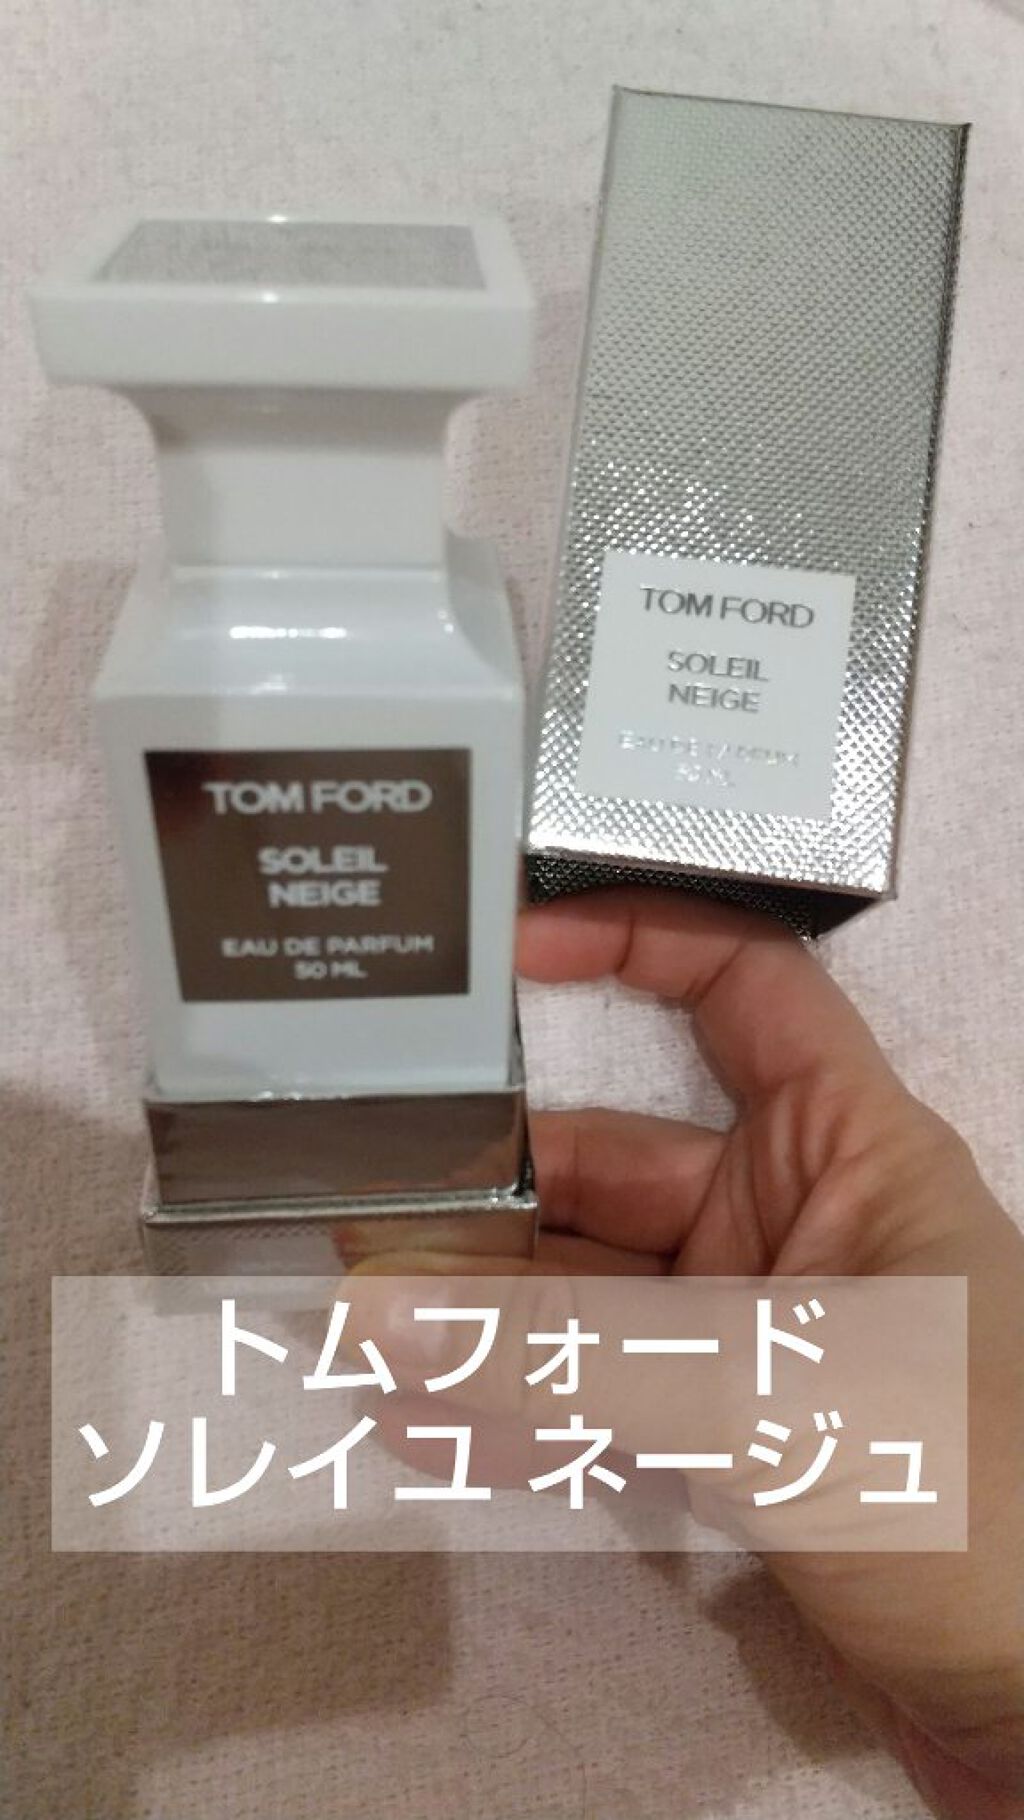 TOM FORD 香水【ソレイユネージュ】-